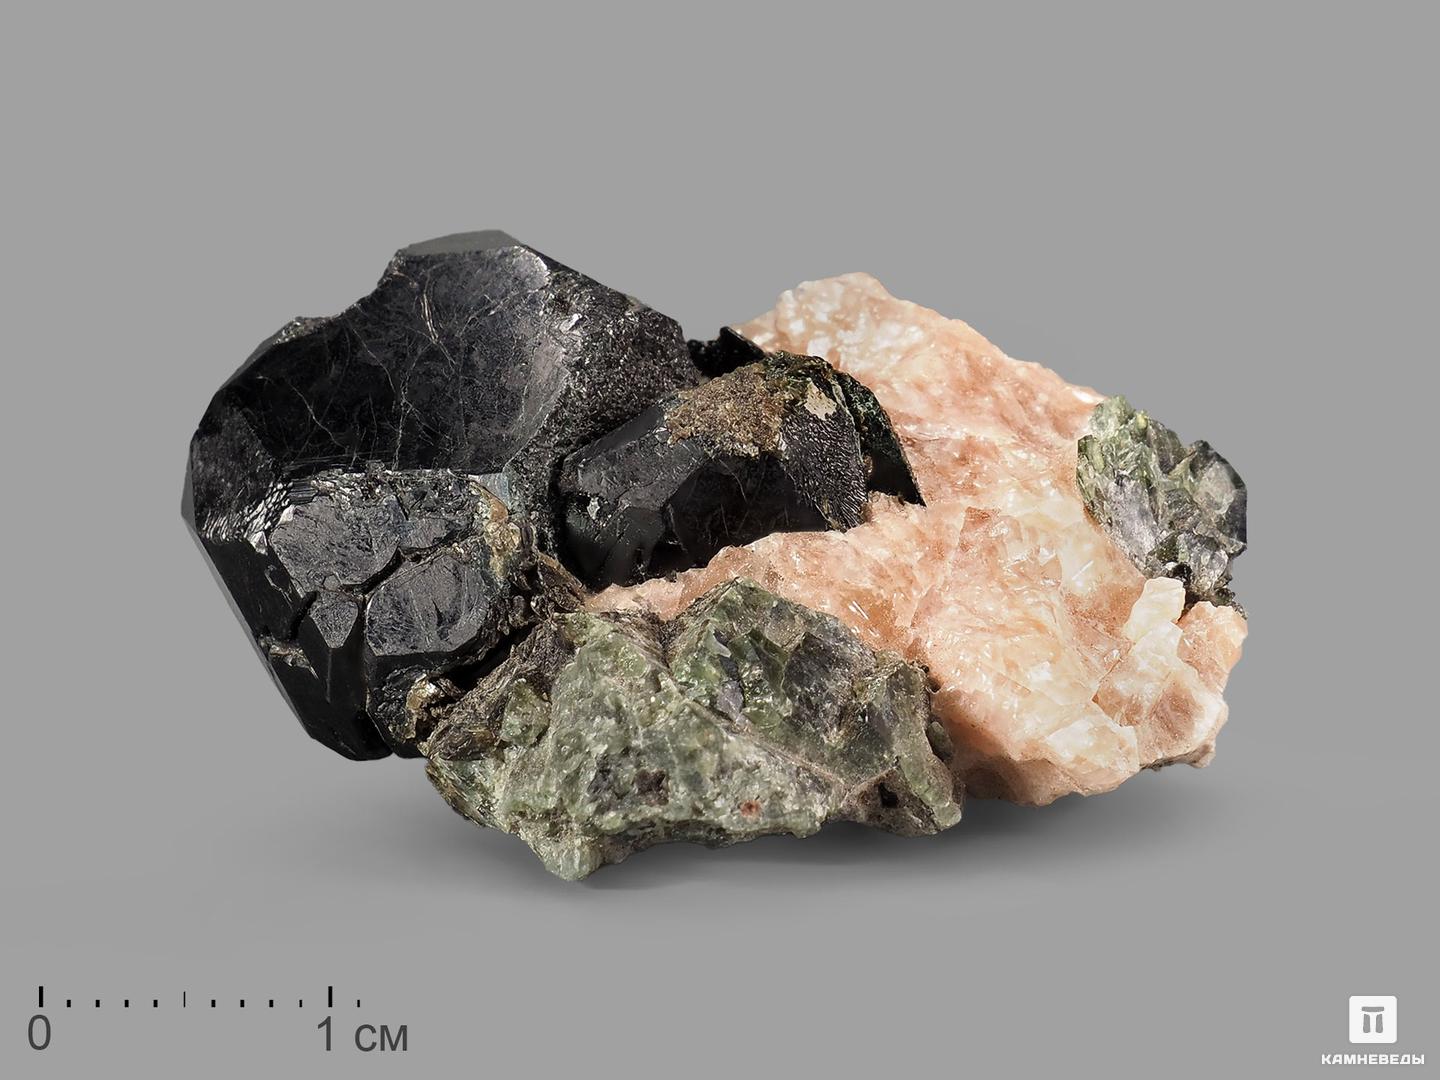 Шпинель чёрная кристалл с кальцитом и диопсидом, 4,4х3,3х1,8 см шпинель чёрная кристалл с кальцитом и диопсидом 4 4х3 3х1 8 см